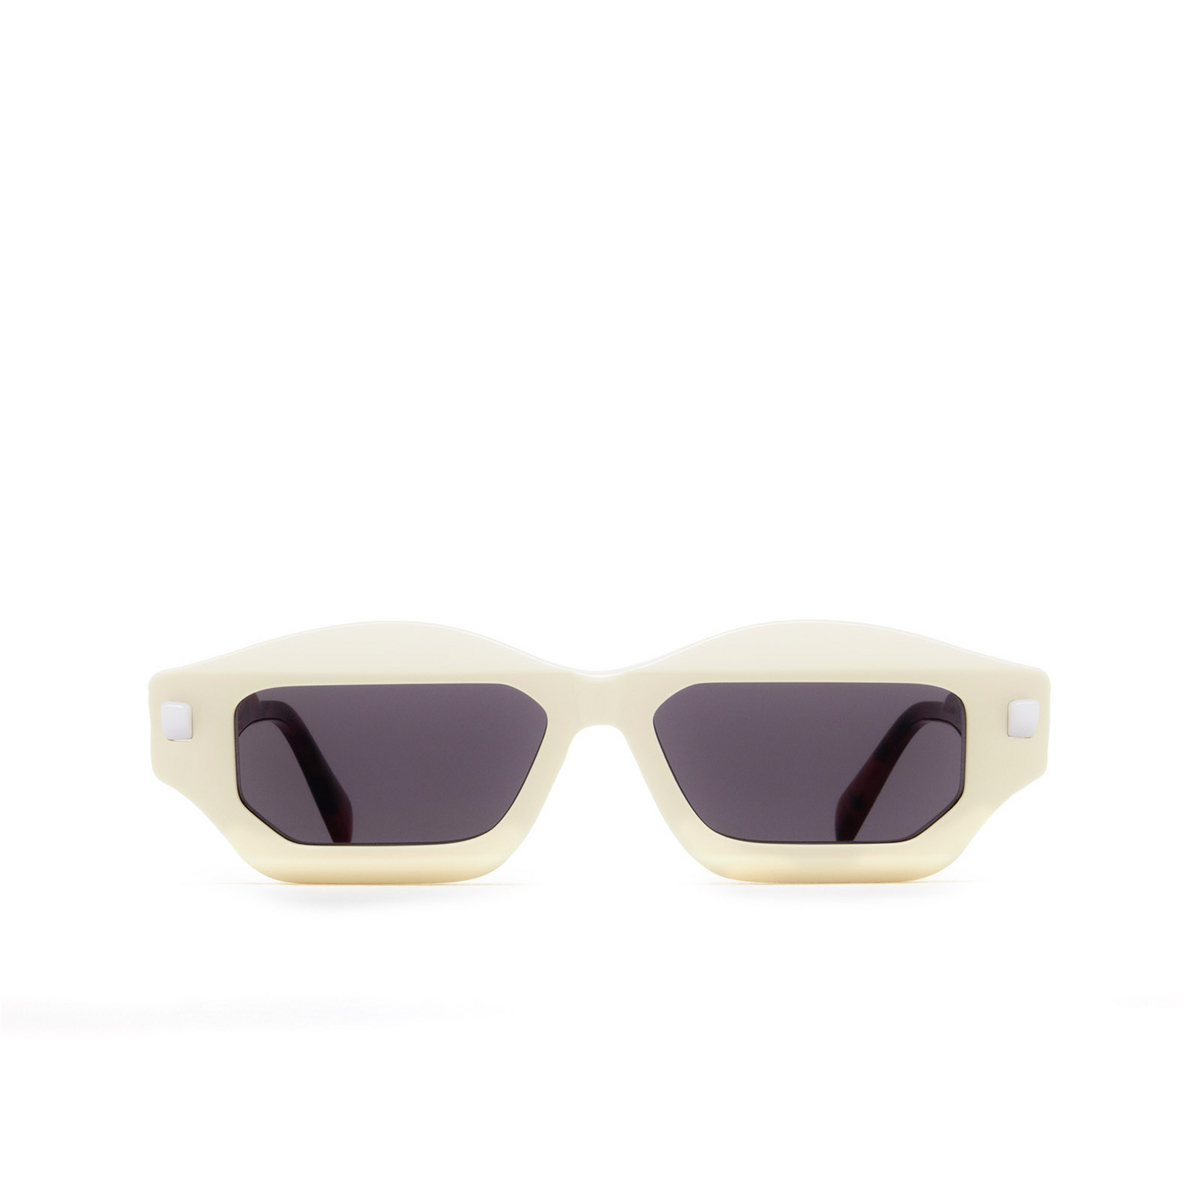 Kuboraum Q6 Sunglasses IY Ivory & Havana Red - front view